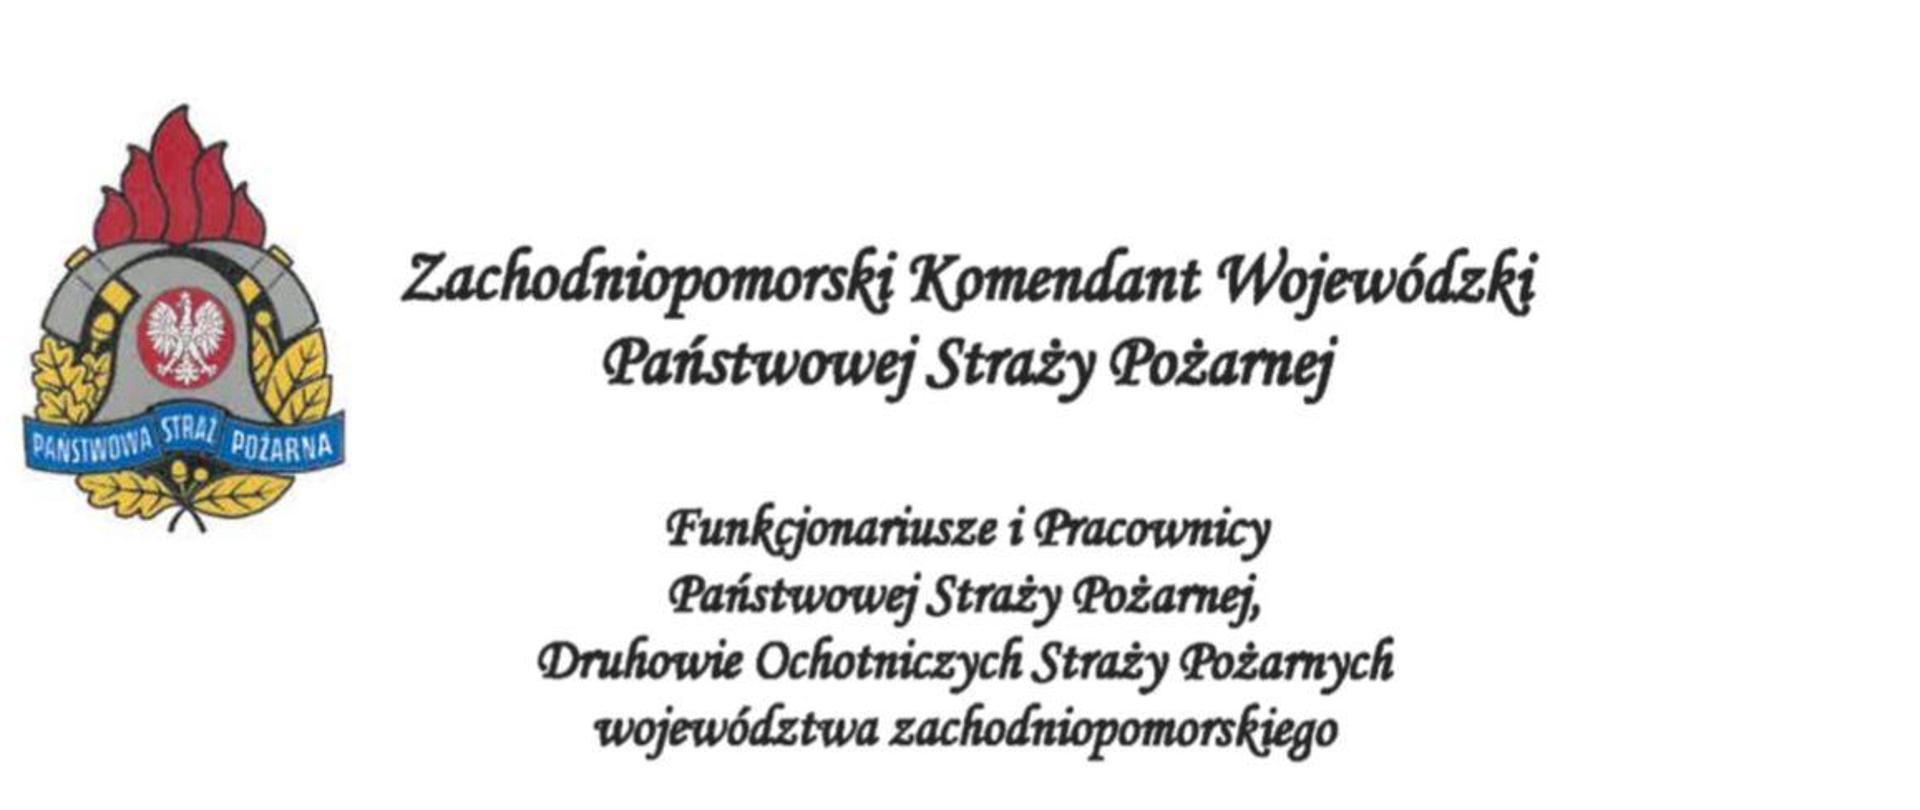 Na zdjęciu znajdują się życzenia Zachodniopomorskiego Komendanta Wojewódzkiego PSP st. bryg. Mirosława Pender